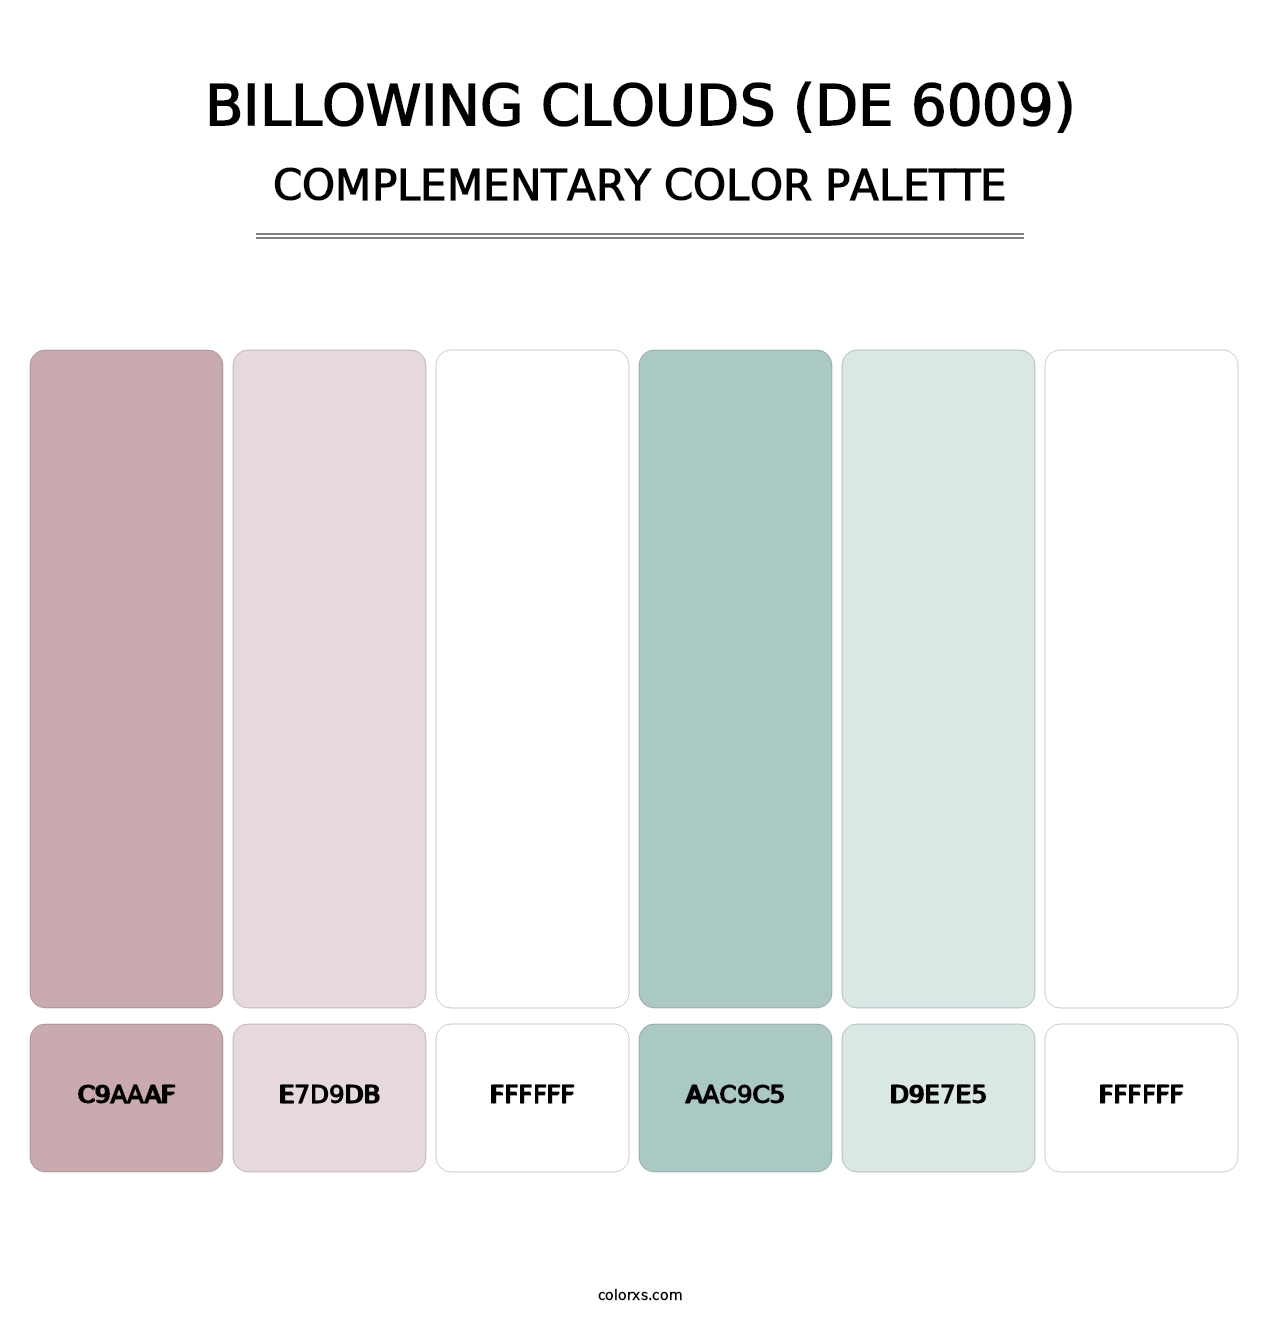 Billowing Clouds (DE 6009) - Complementary Color Palette